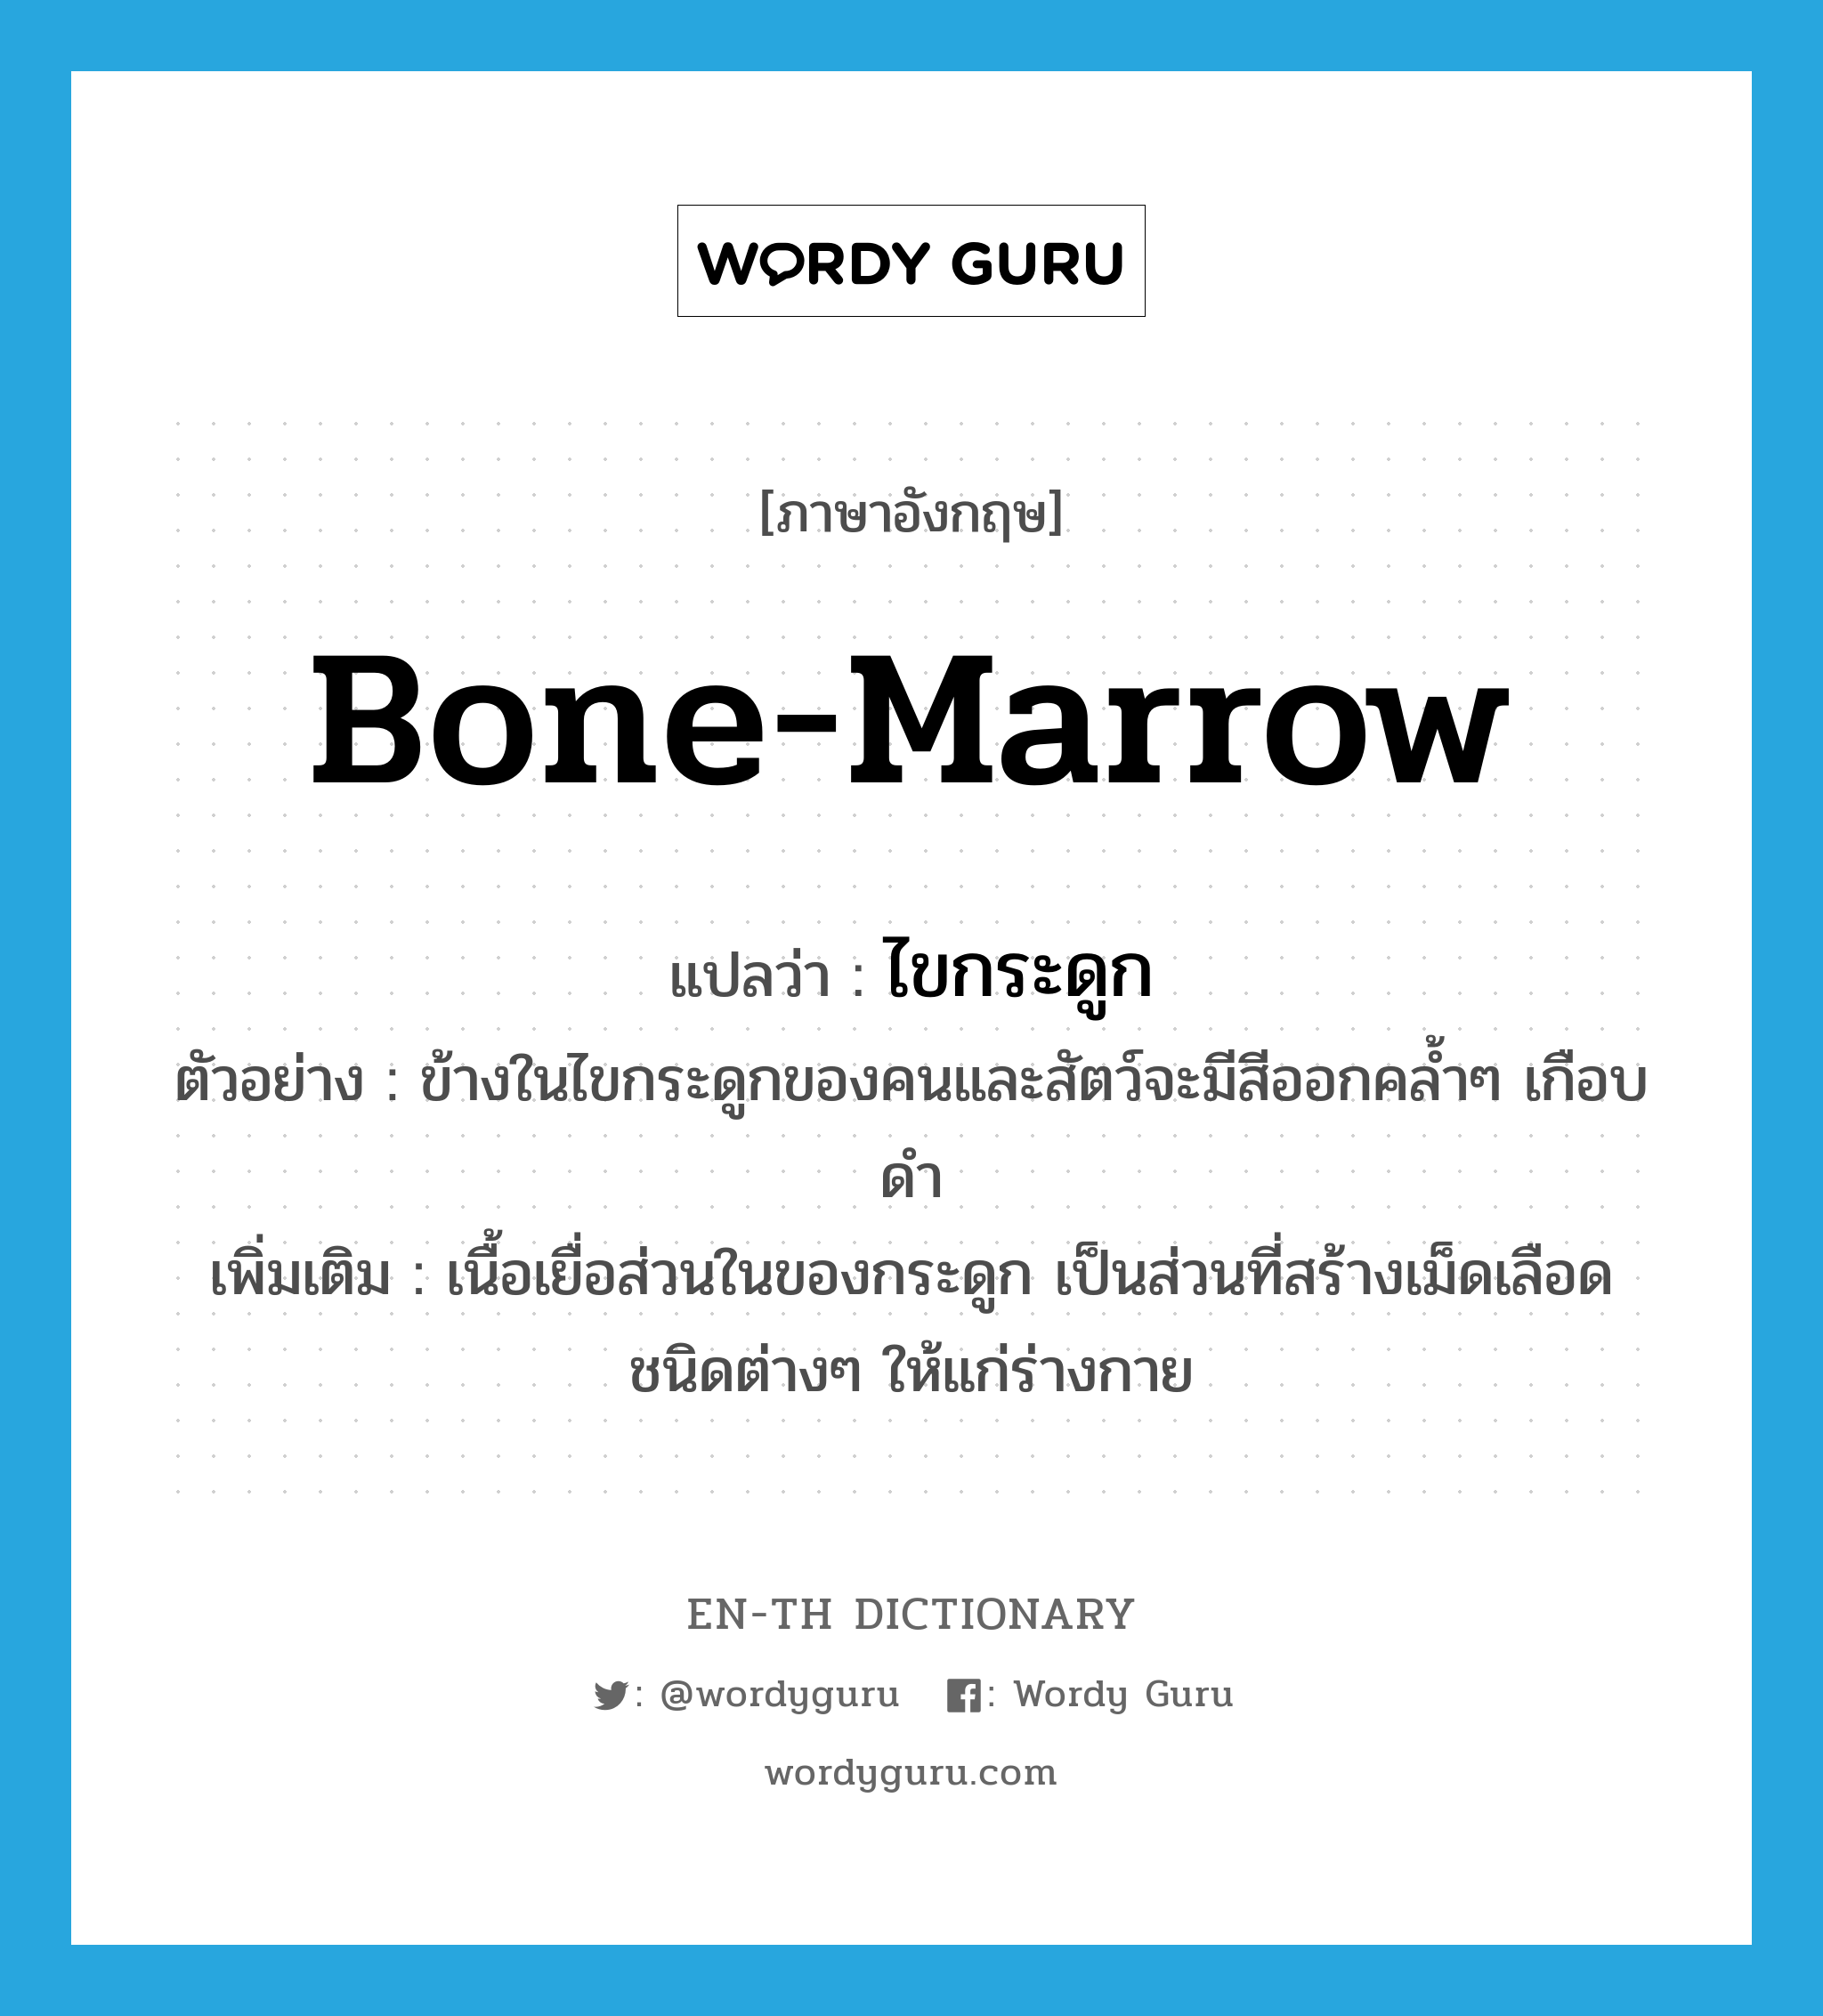 bone-marrow แปลว่า?, คำศัพท์ภาษาอังกฤษ bone-marrow แปลว่า ไขกระดูก ประเภท N ตัวอย่าง ข้างในไขกระดูกของคนและสัตว์จะมีสีออกคล้ำๆ เกือบดำ เพิ่มเติม เนื้อเยื่อส่วนในของกระดูก เป็นส่วนที่สร้างเม็ดเลือดชนิดต่างๆ ให้แก่ร่างกาย หมวด N